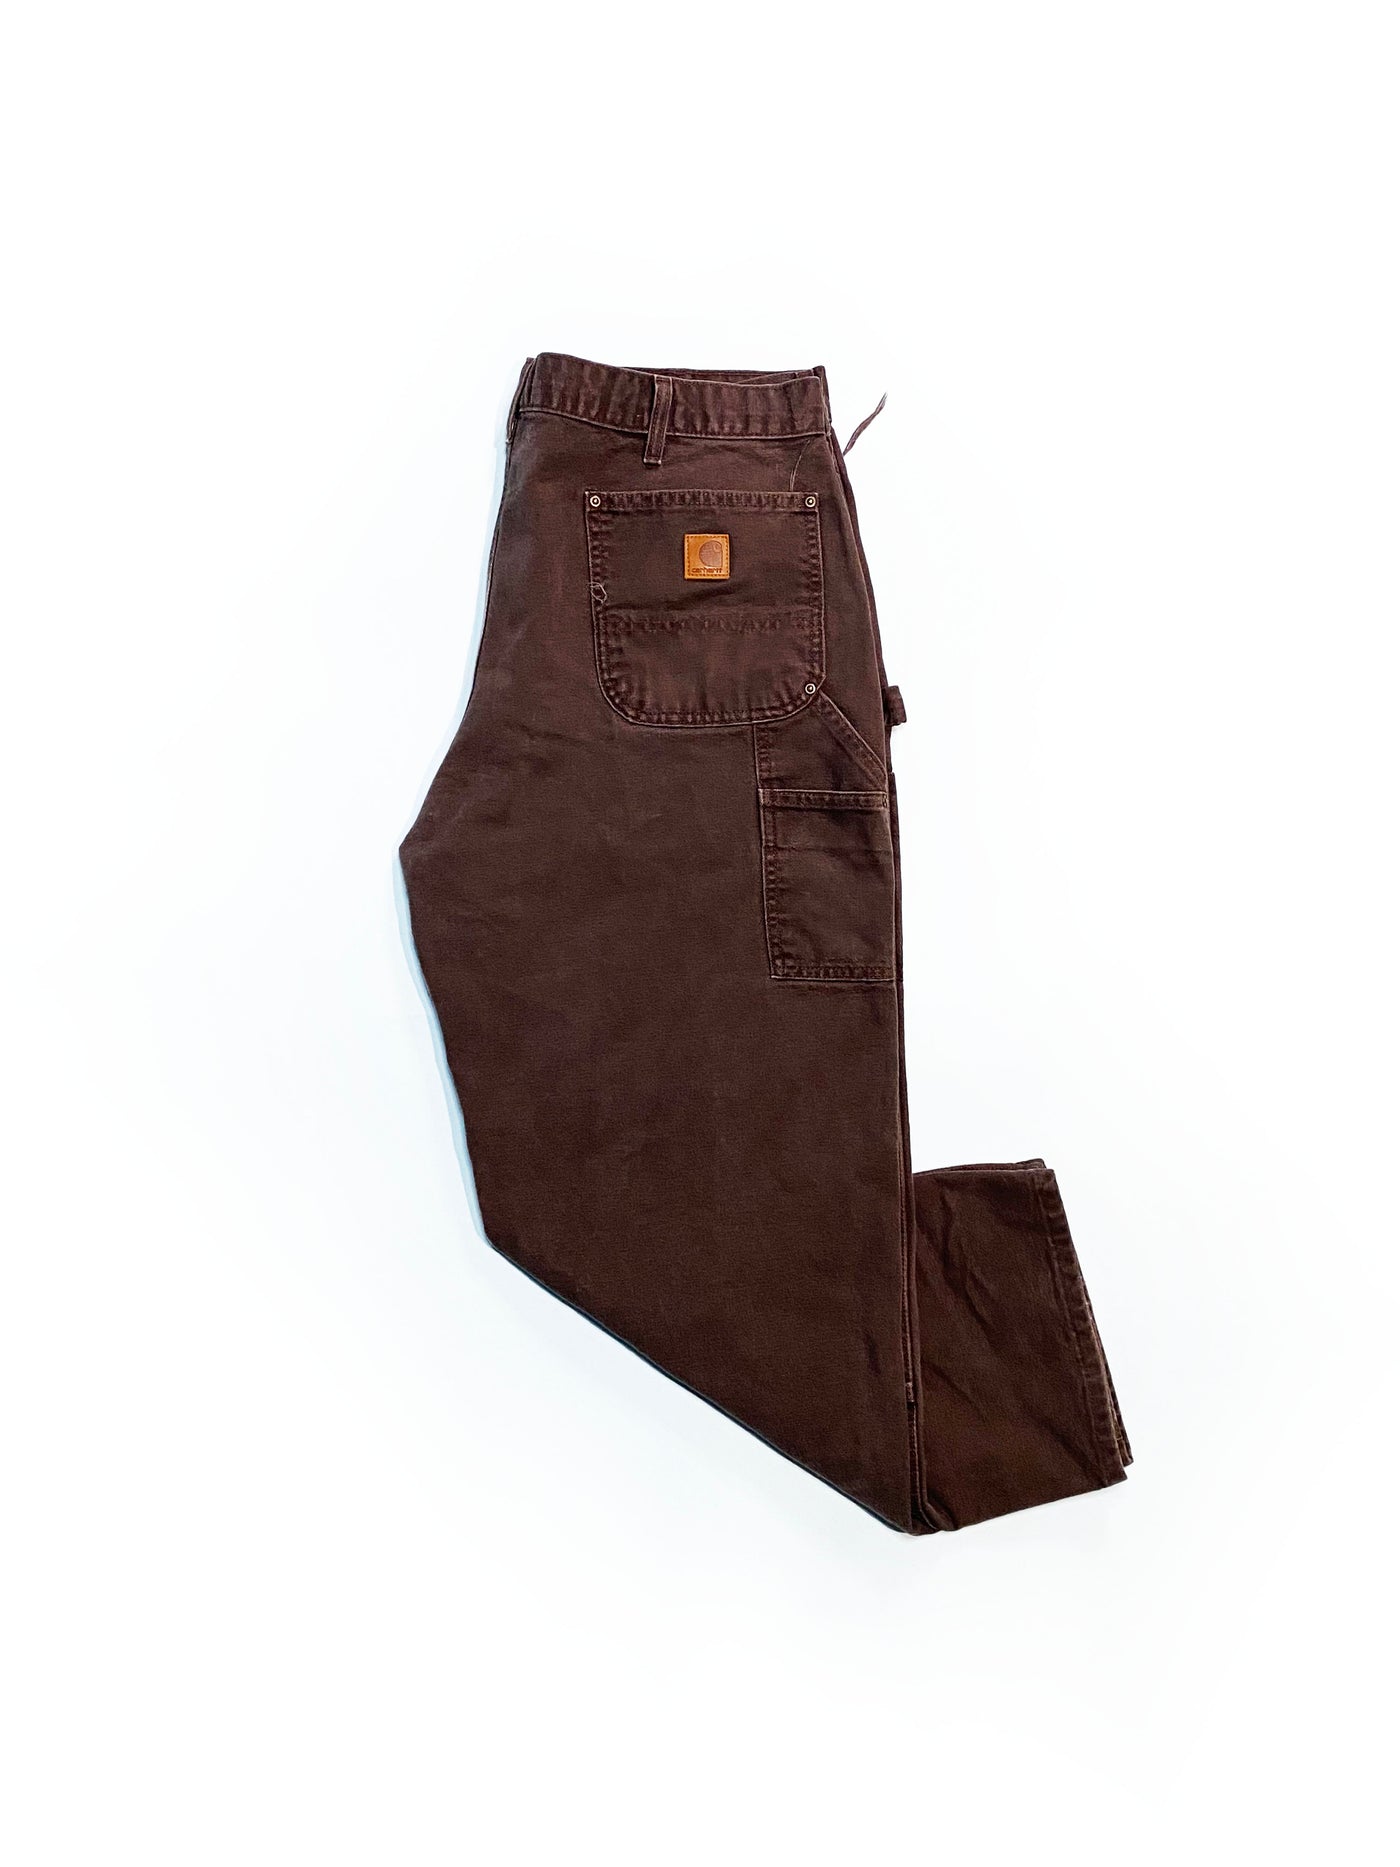 Vintage Carhartt Double Knee Work Pants - Brown